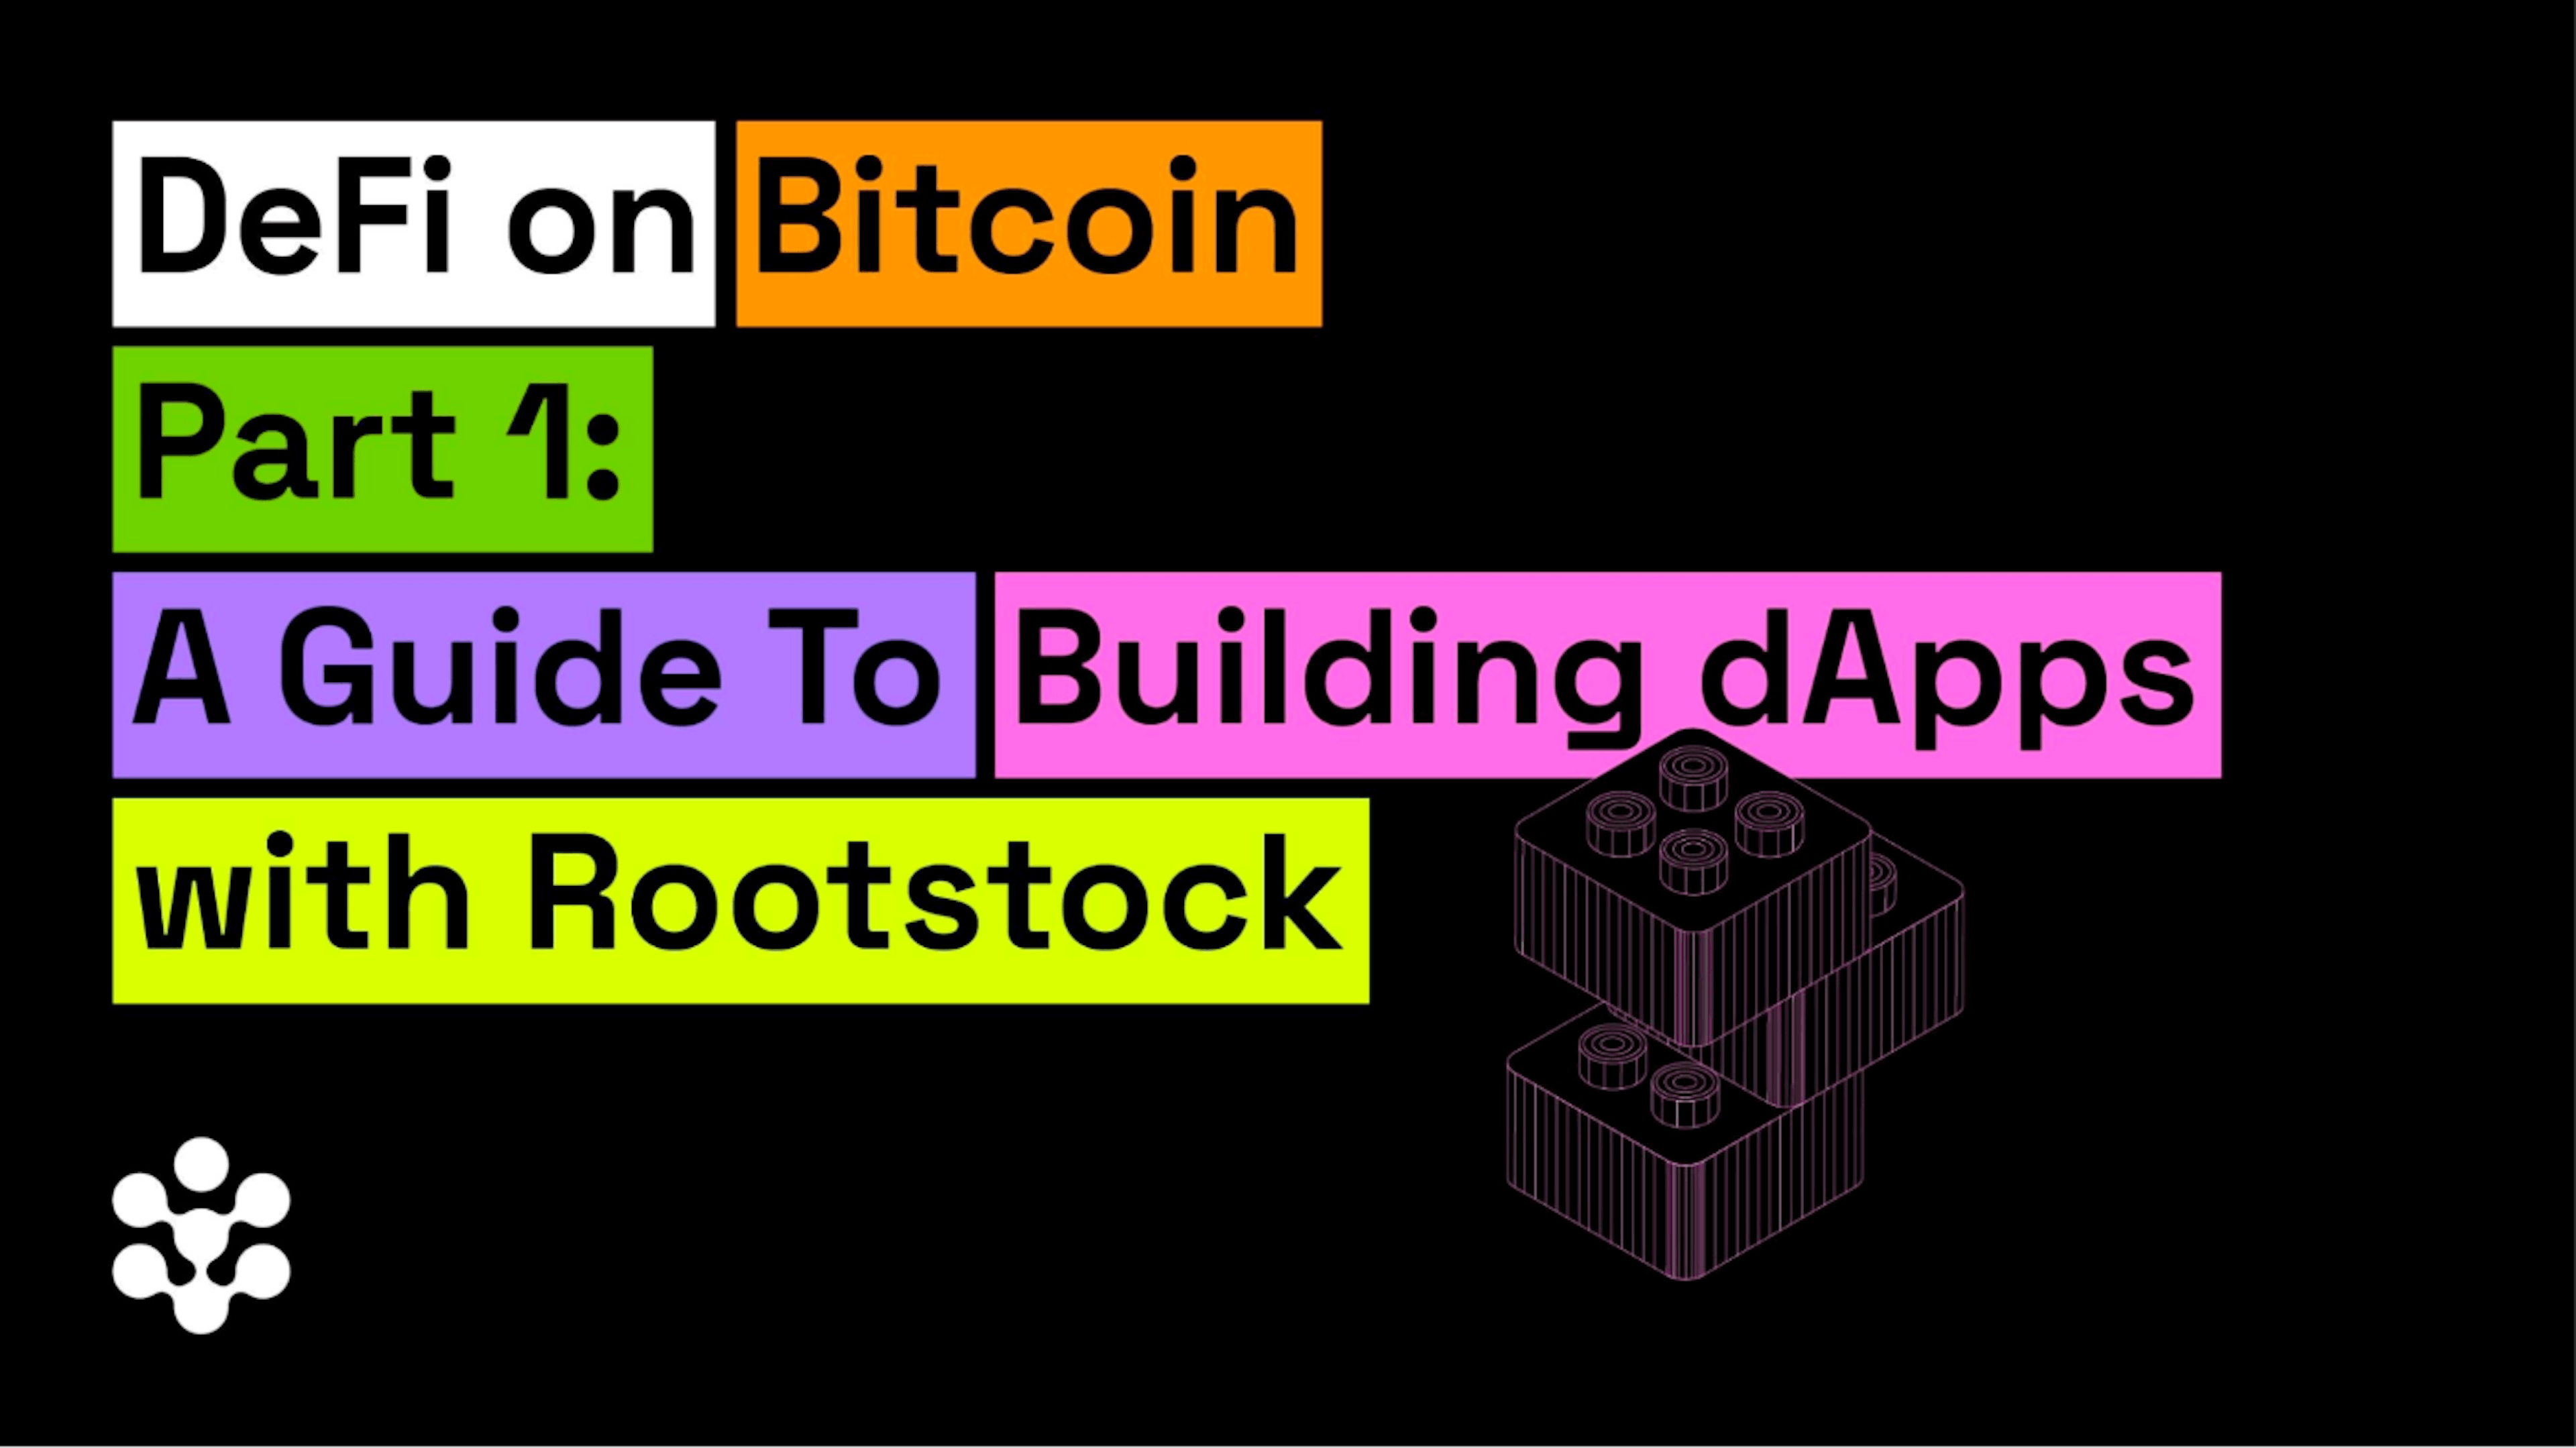 featured image - DeFi en Bitcoin Parte 1: Una guía para construir dApps con Rootstock